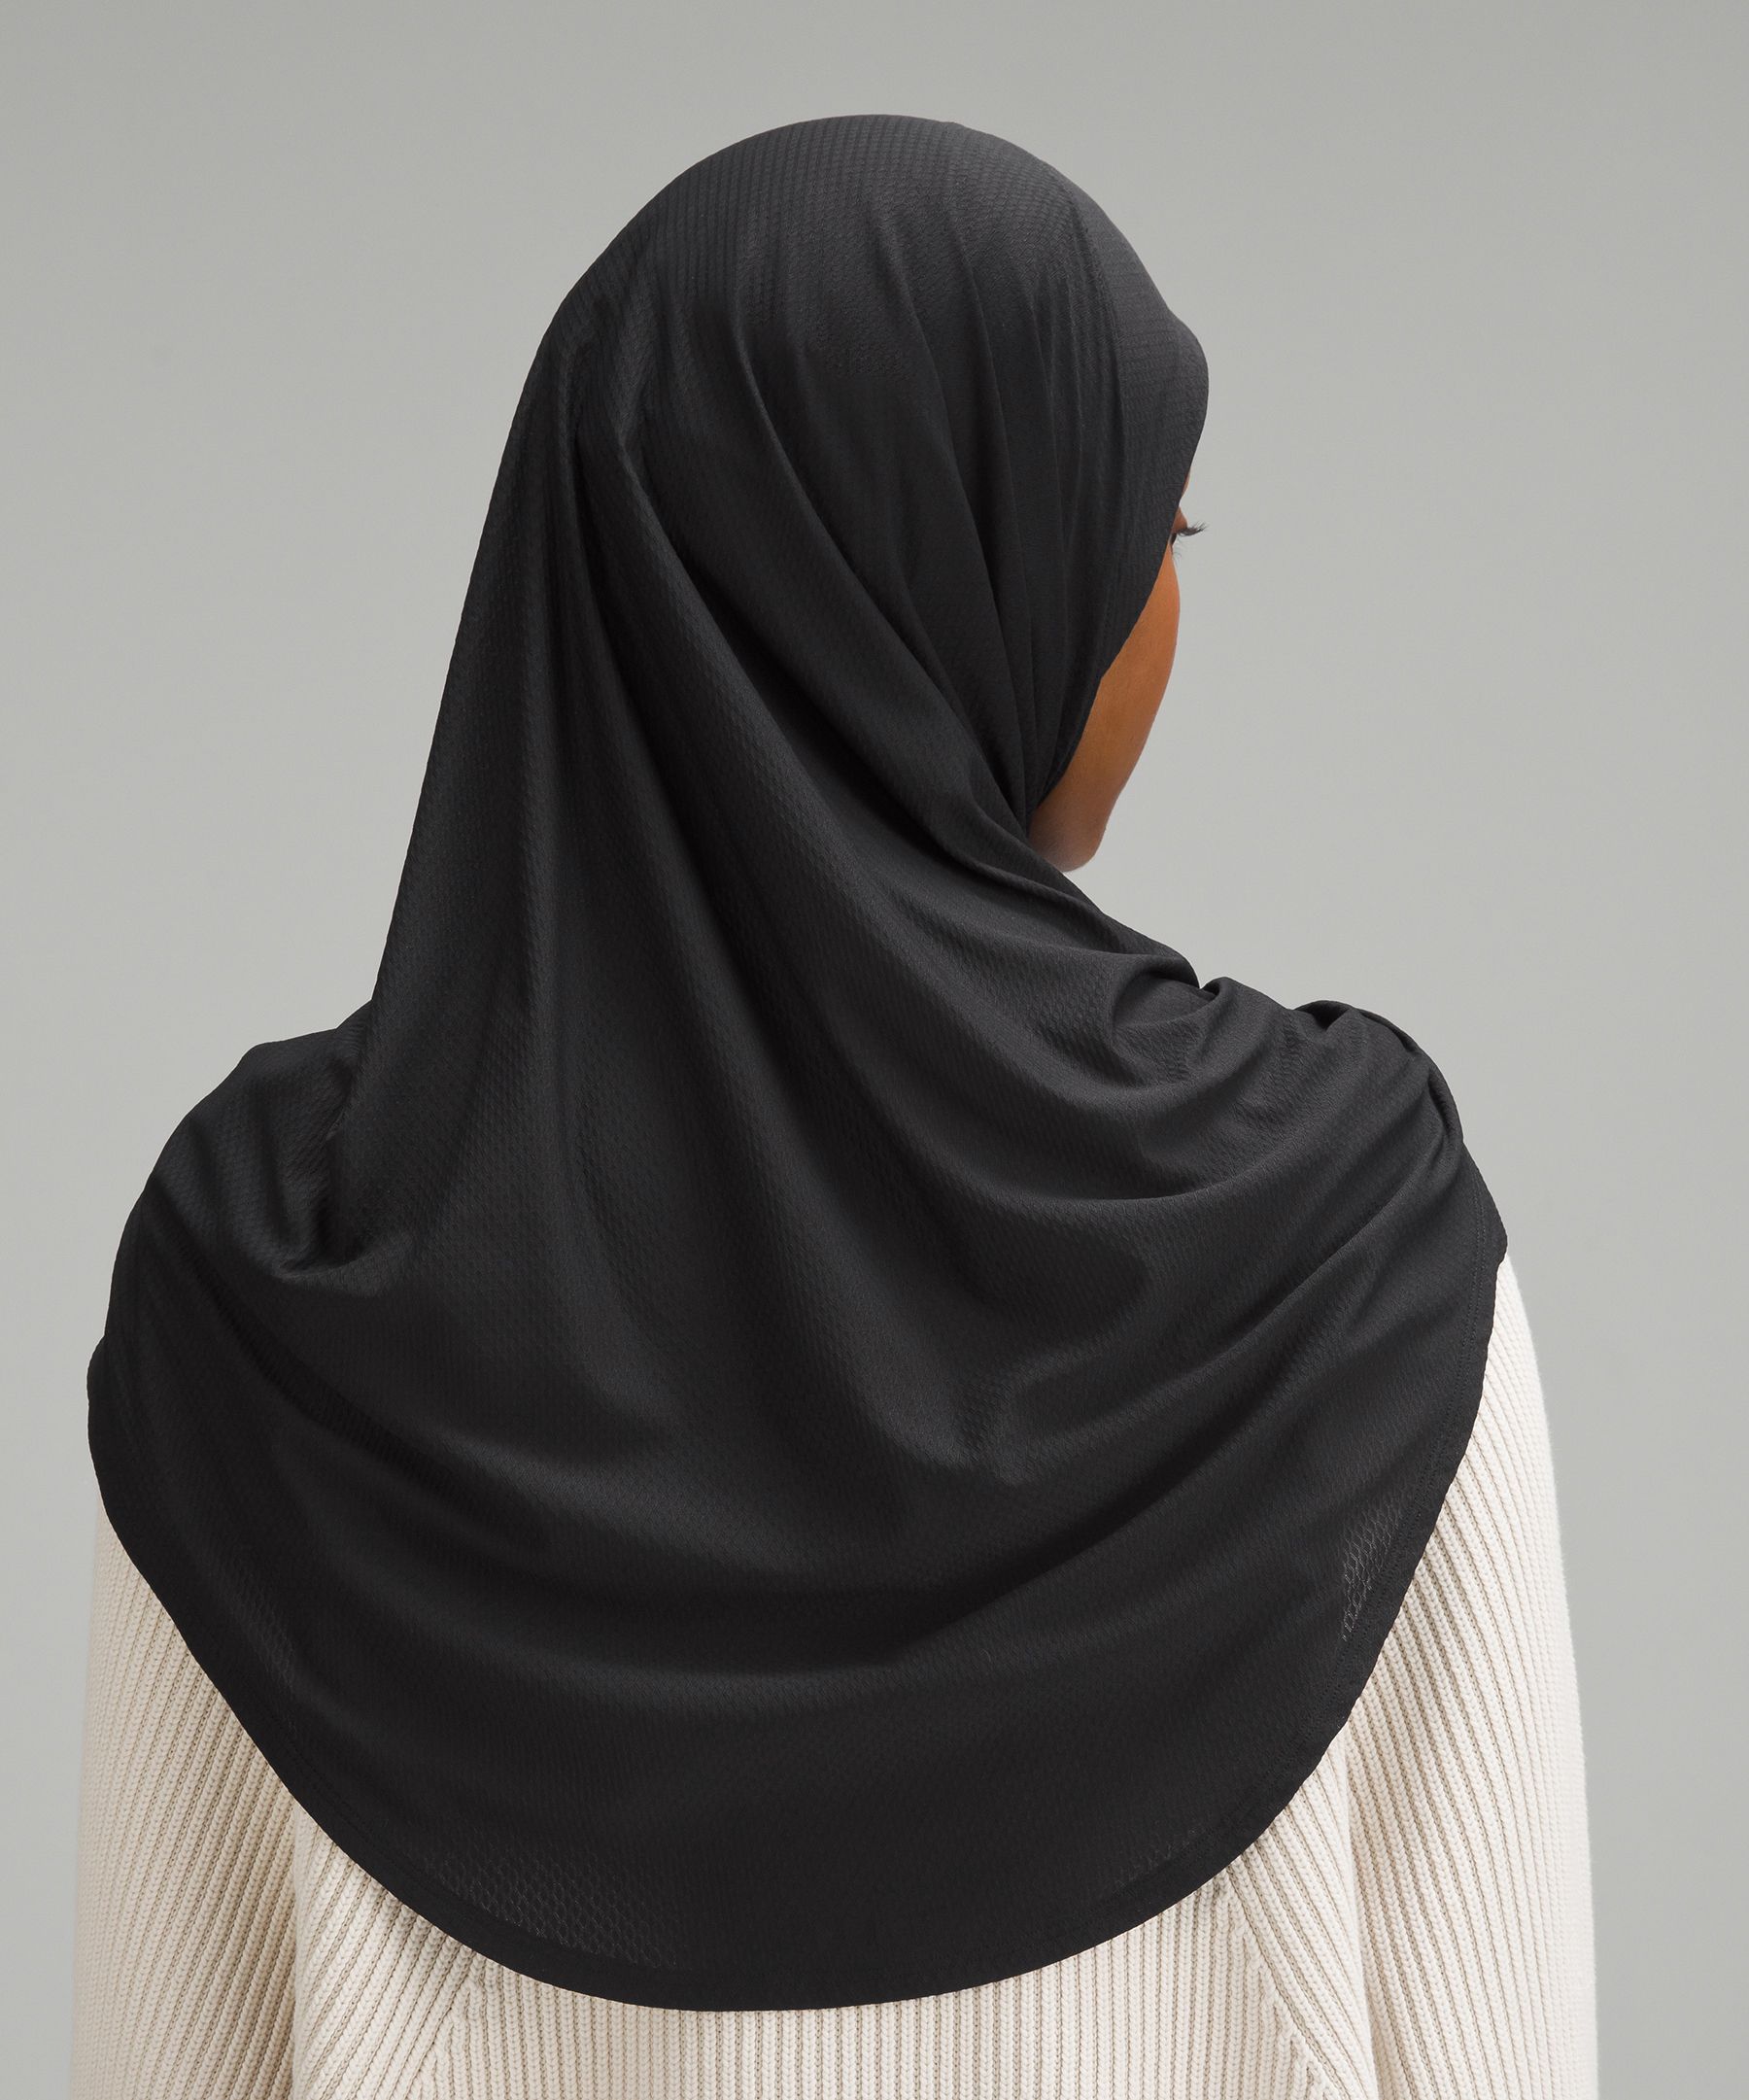 Shop Lululemon Pull-on-style Hijab